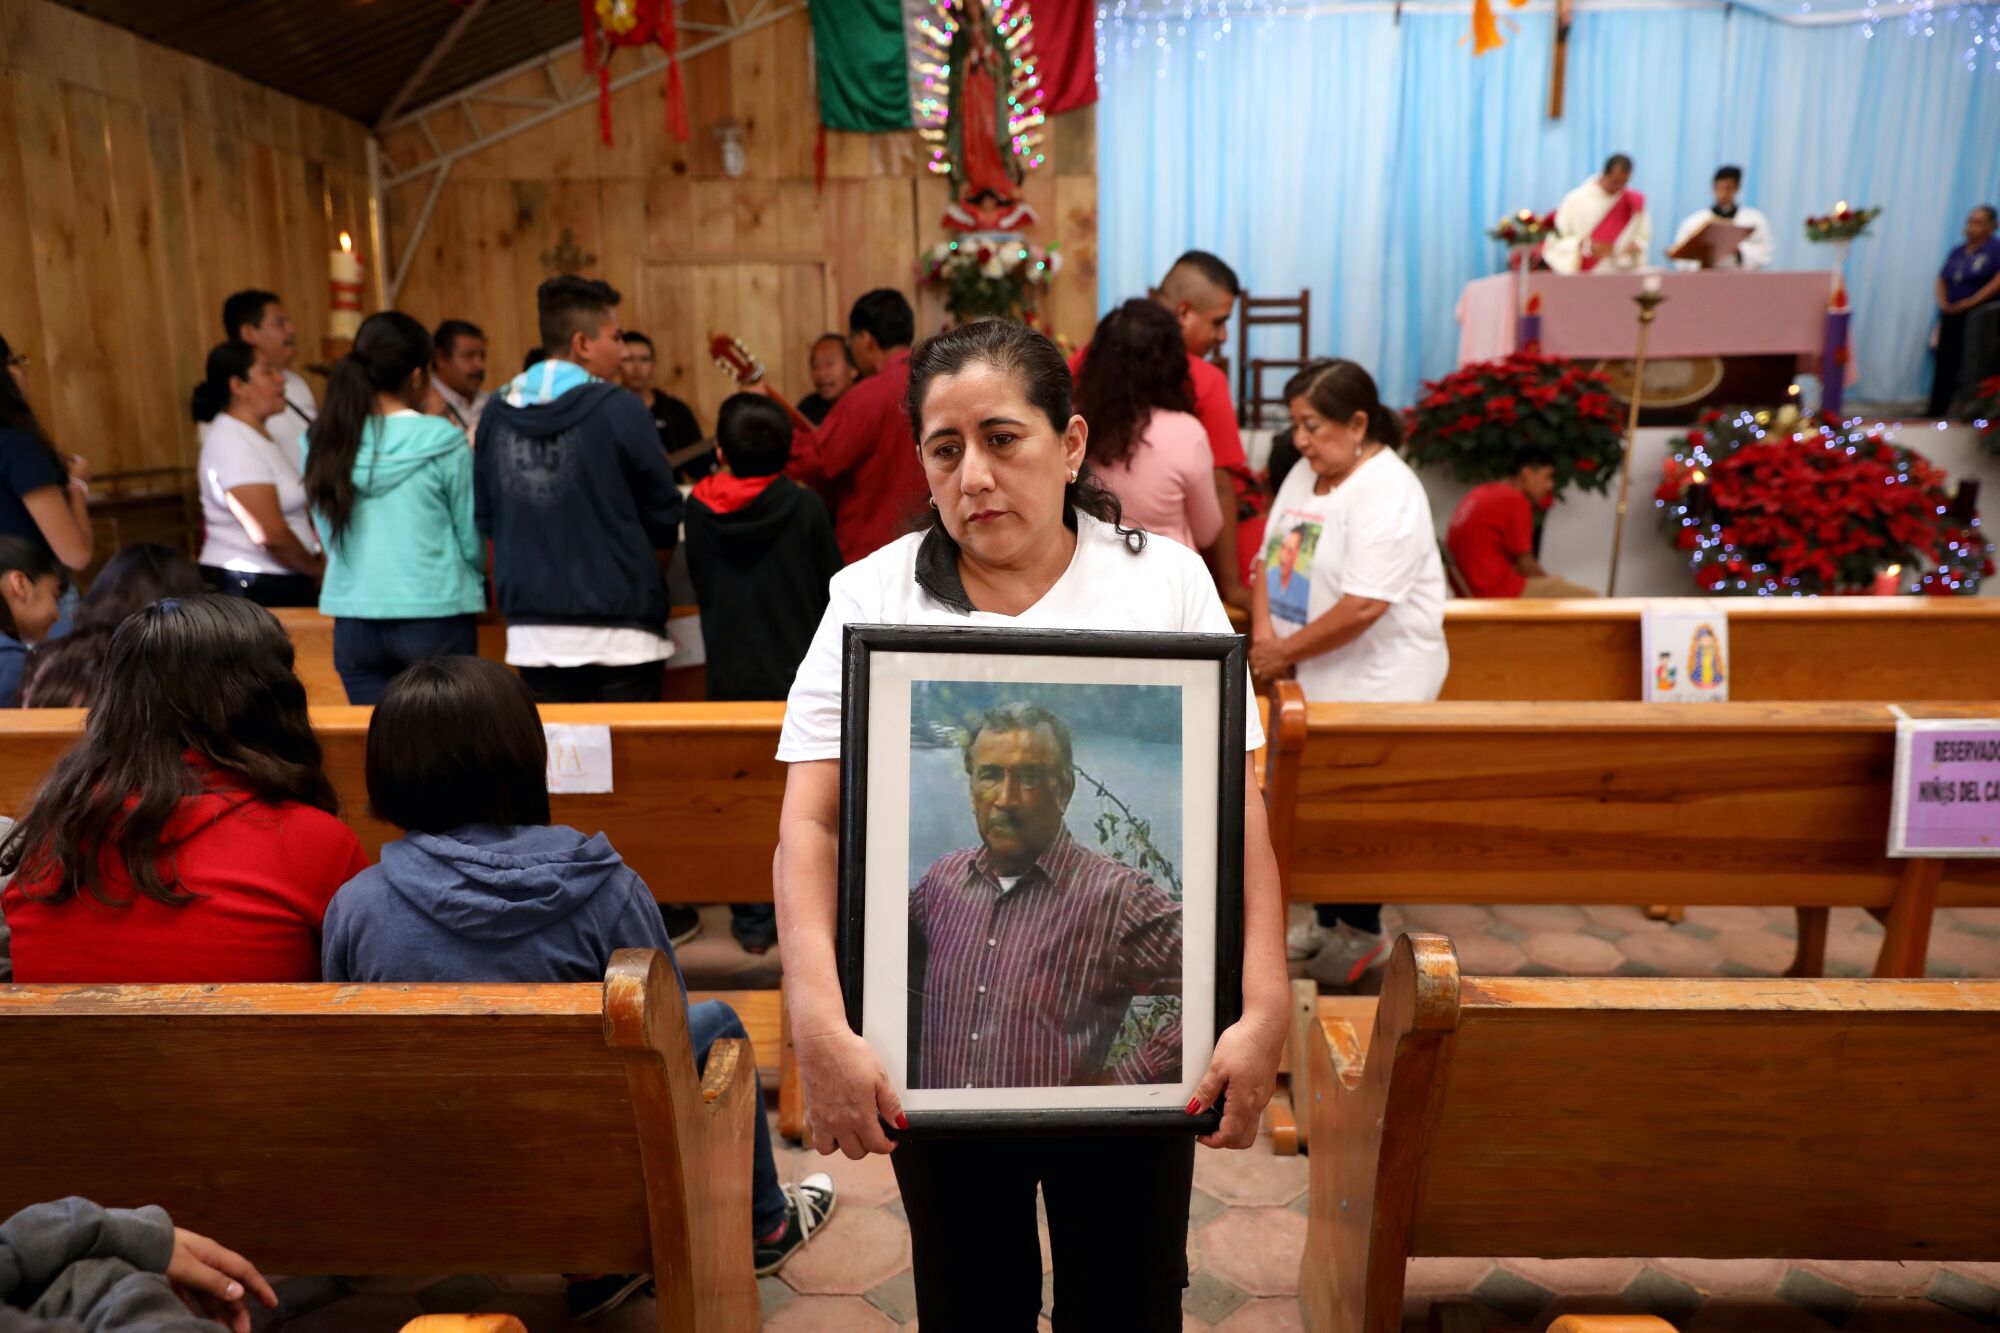 Georgina Quiroz Peñaloza carries a photo of her father, Albino Quiroz Sandoval, after a Mass at Parroquia Nuestra Señora de la Natividad on Dec. 15 in Tepoztlán, Mexico.